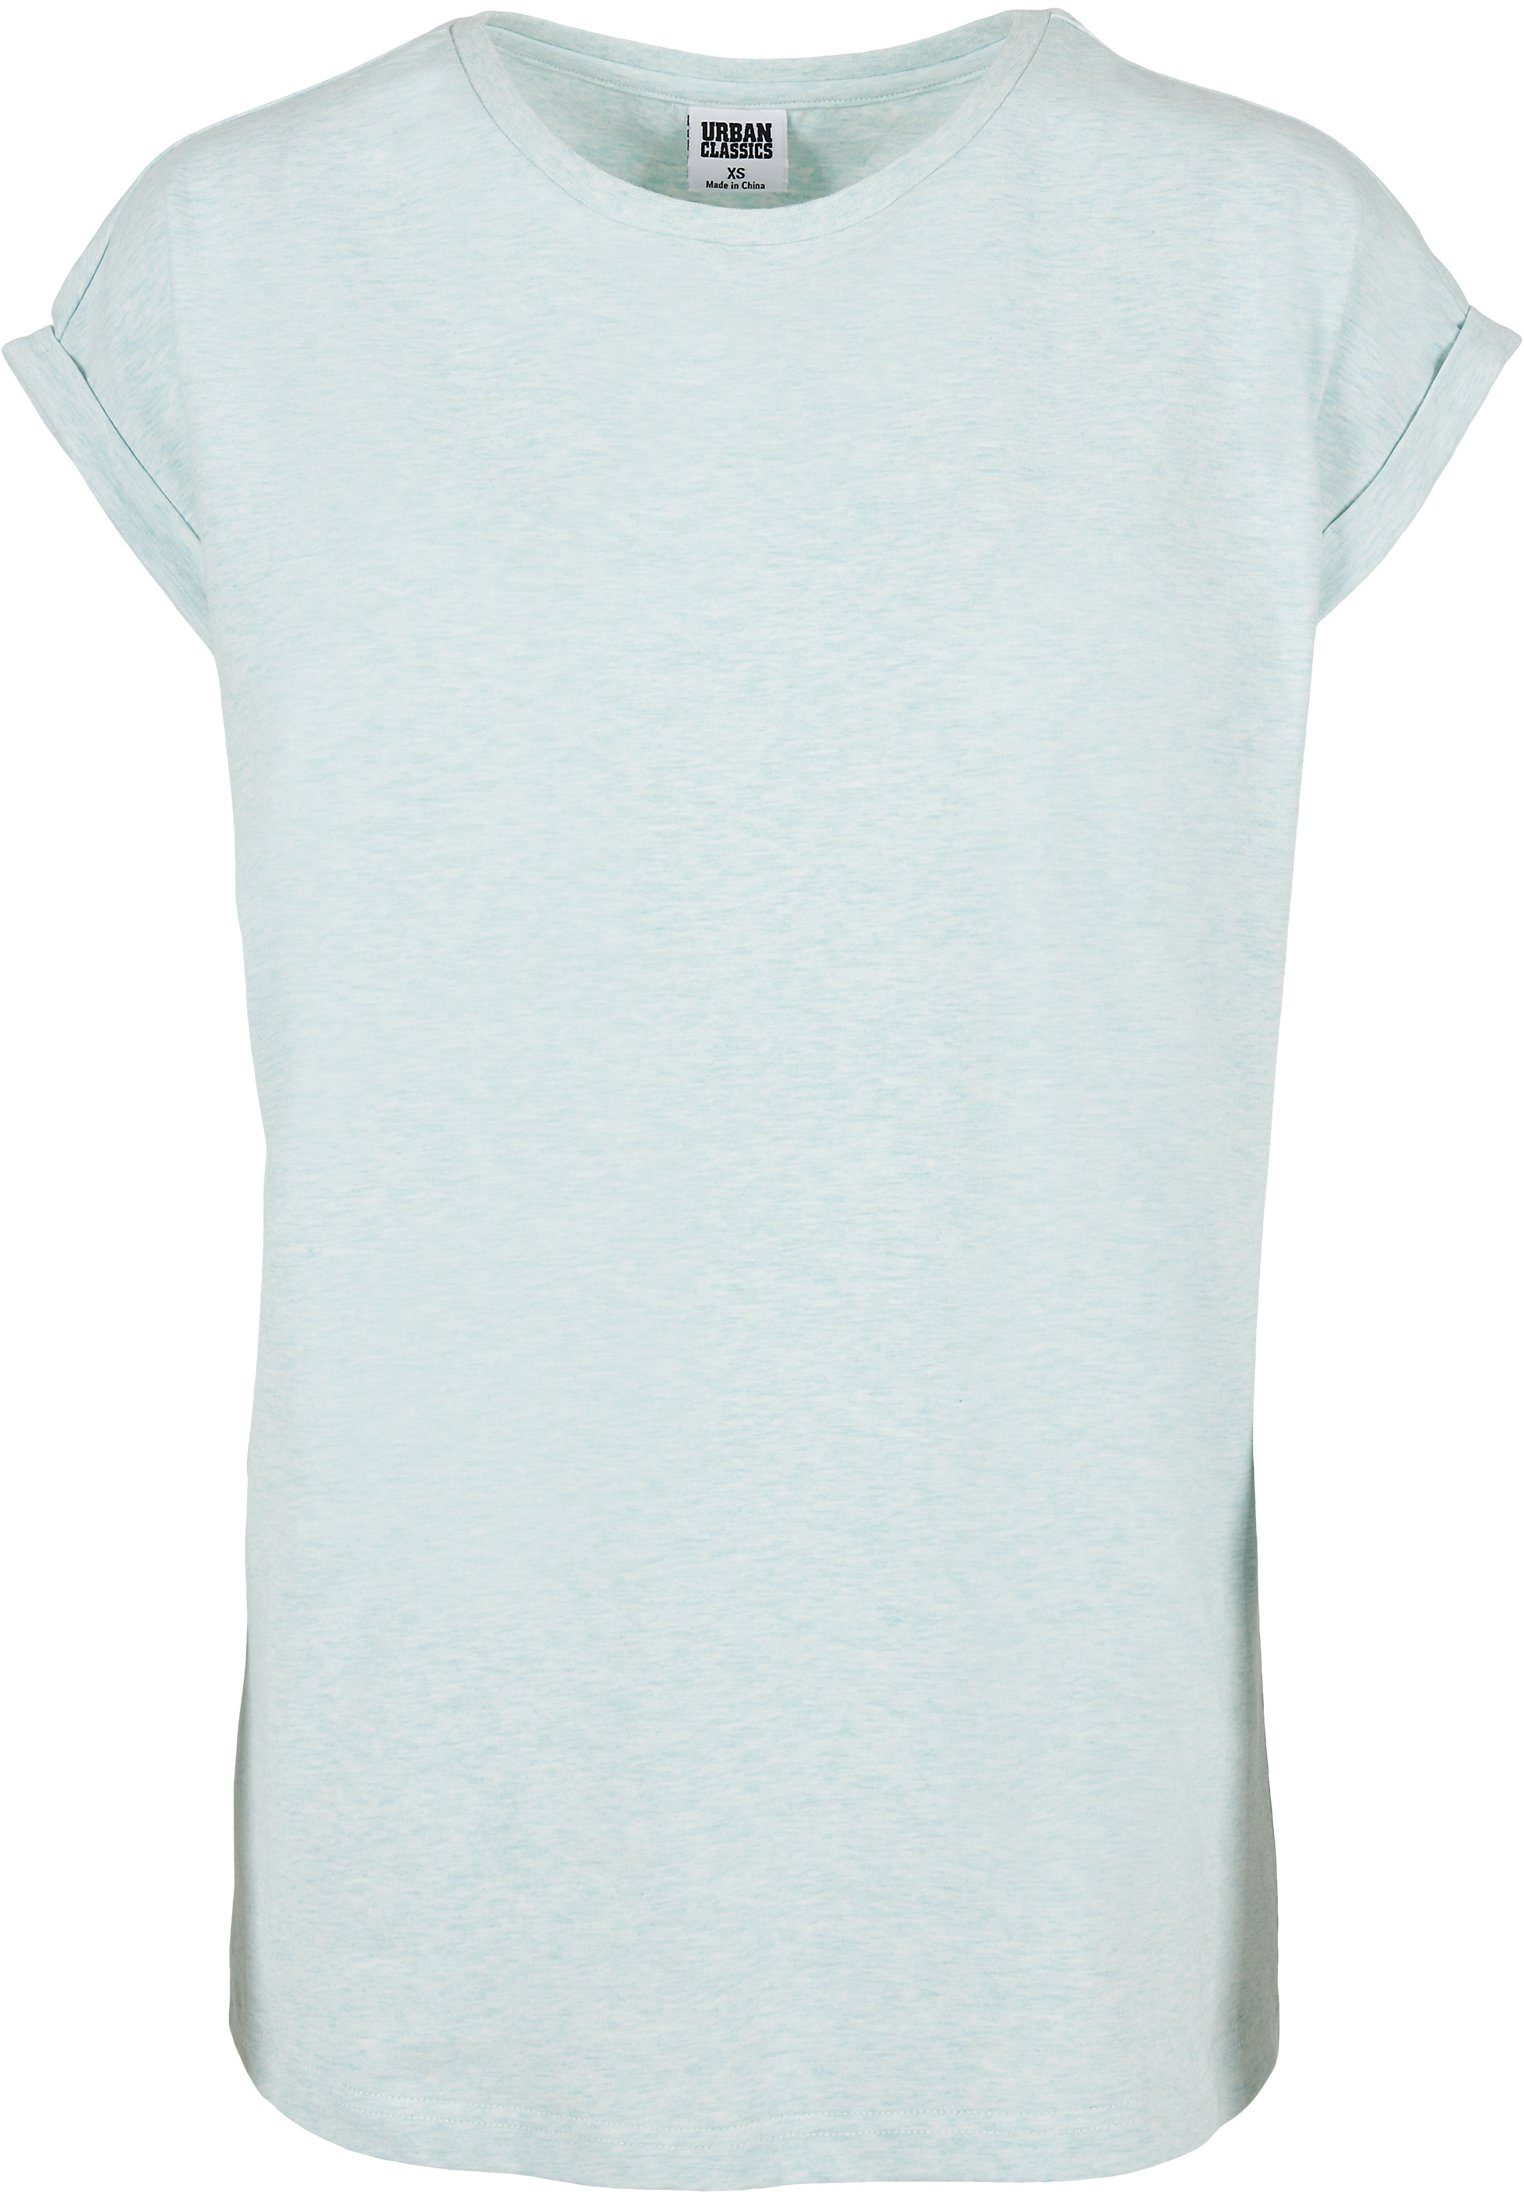 Melange URBAN Kurzarmshirt Extended (1-tlg) CLASSICS Tee Ladies Frauen Color melange Shoulder aqua